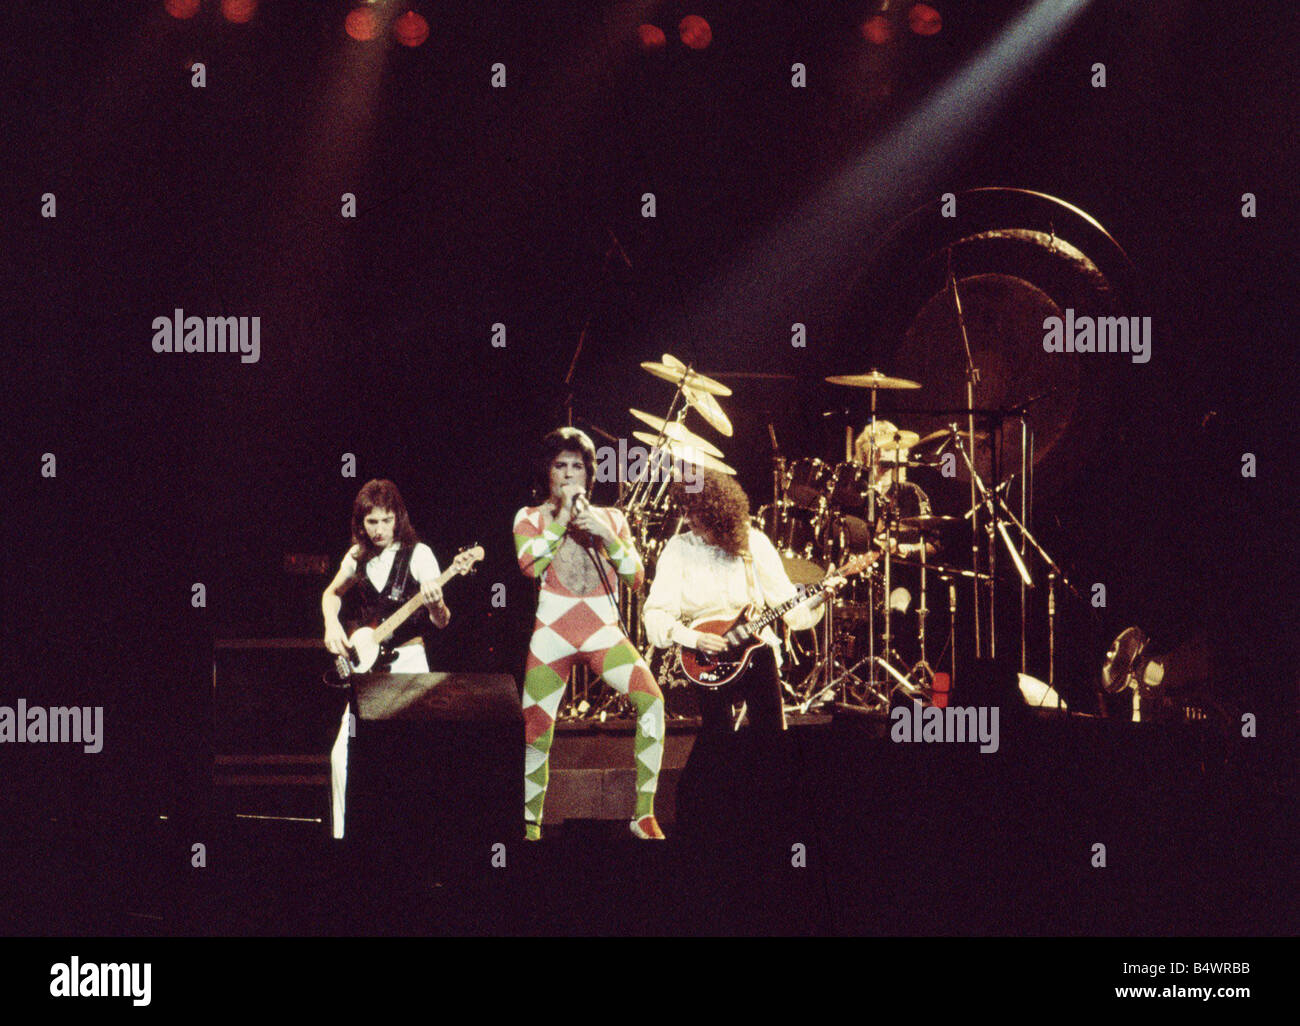 La regina del Gruppo Rock Freddie Mercury Brian May John Deacon e Roger Taylor Queen in concerto degli anni settanta Freddie Mercury Foto Stock